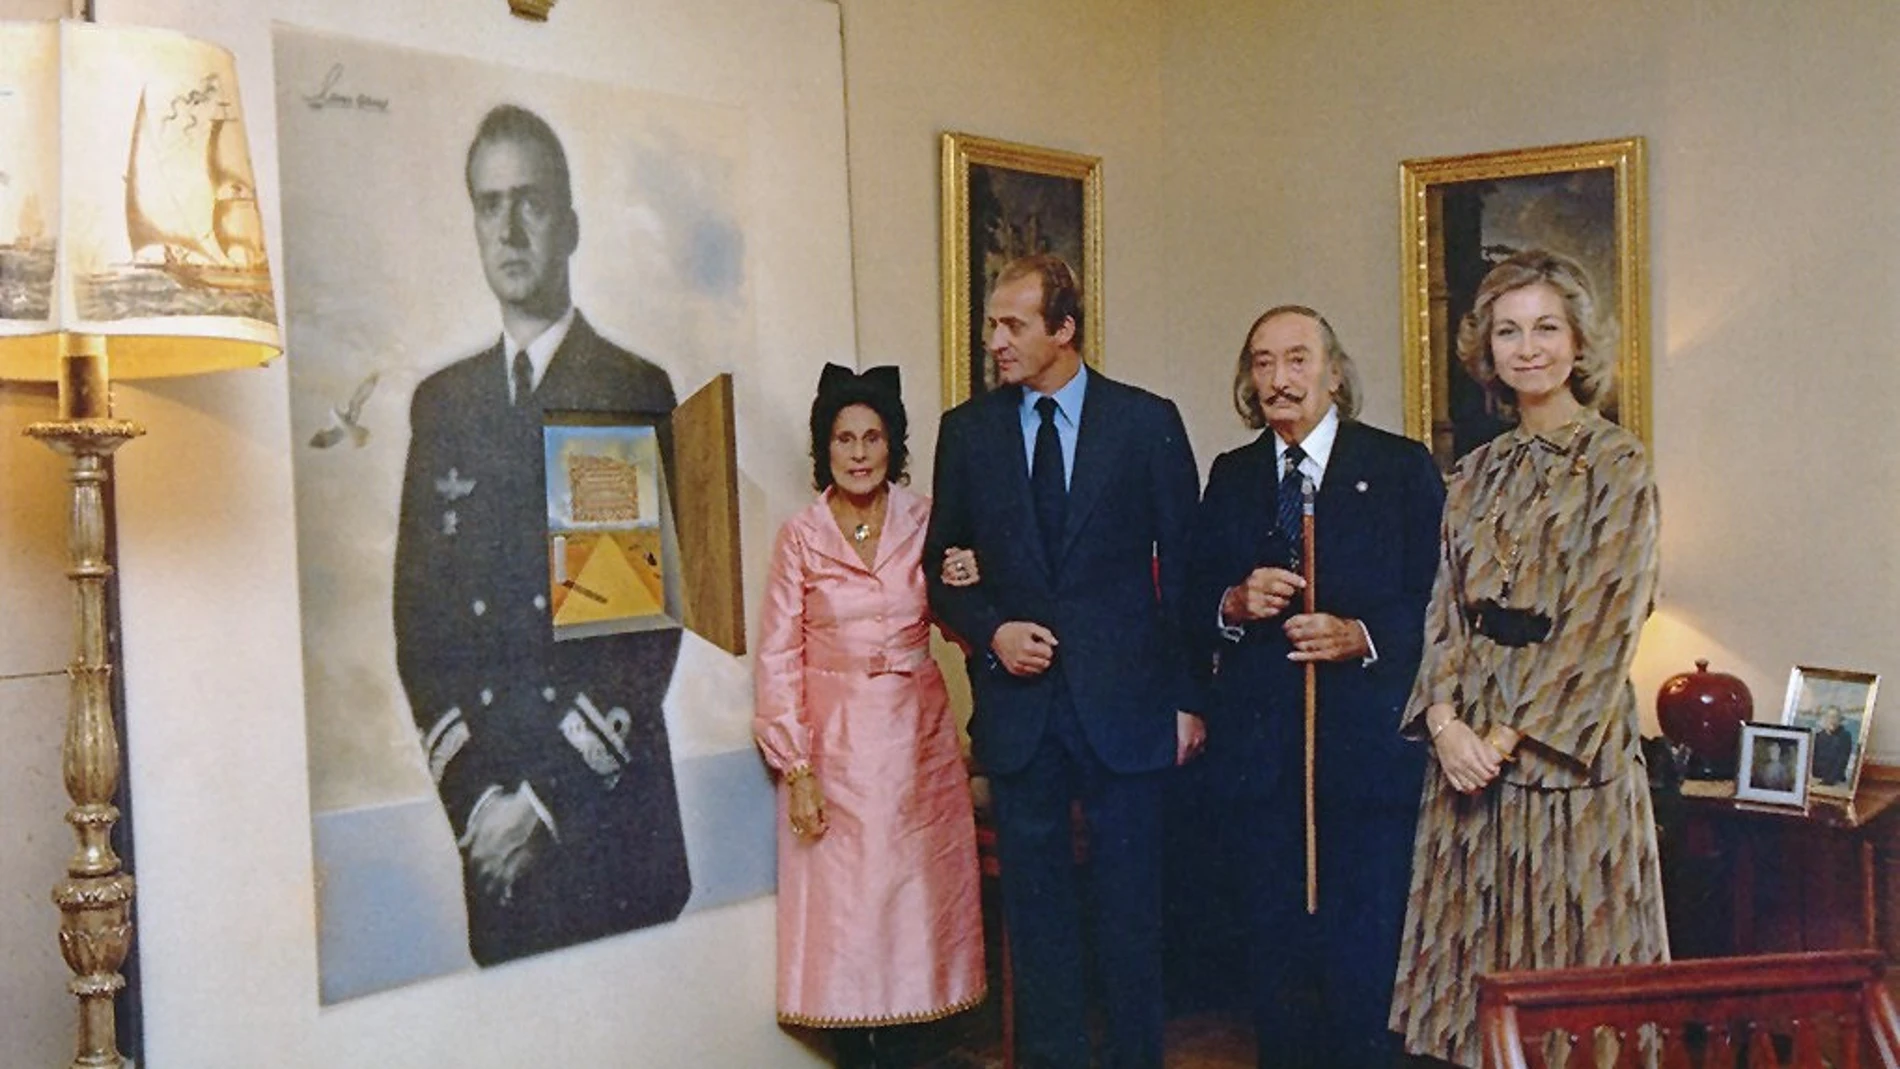 Gala y Salvador Dalí en el momento de entregar a los Reyes de España el cuadro "El ensueño del príncipe"